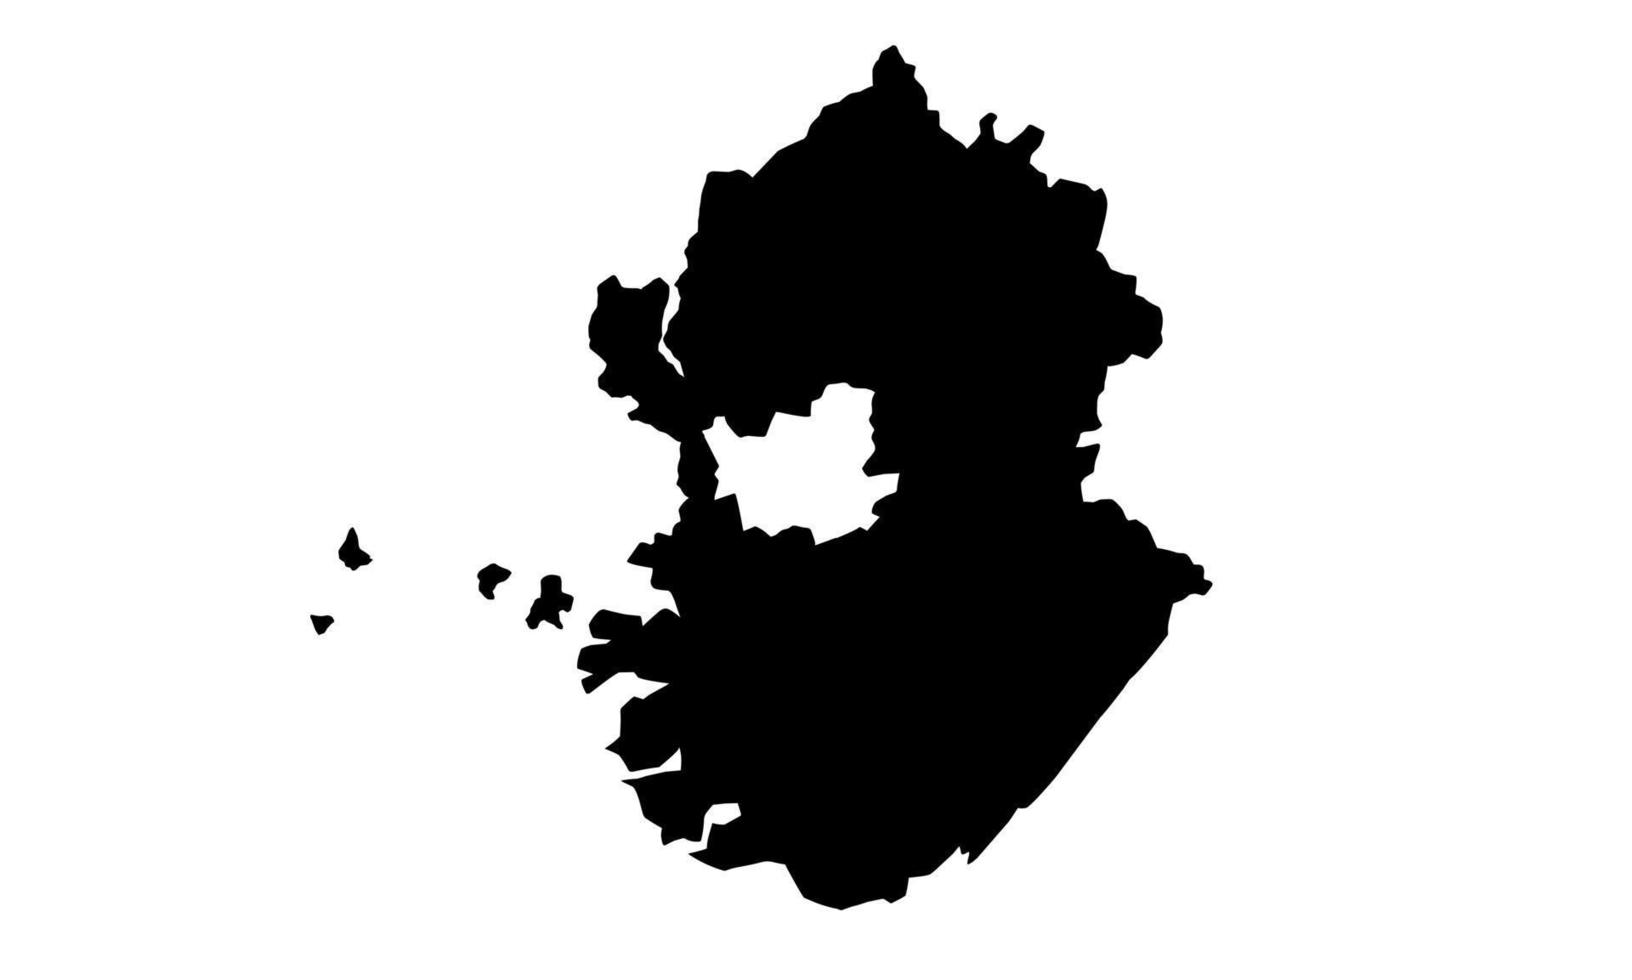 gyeonggi mapa silueta negra sobre fondo blanco vector